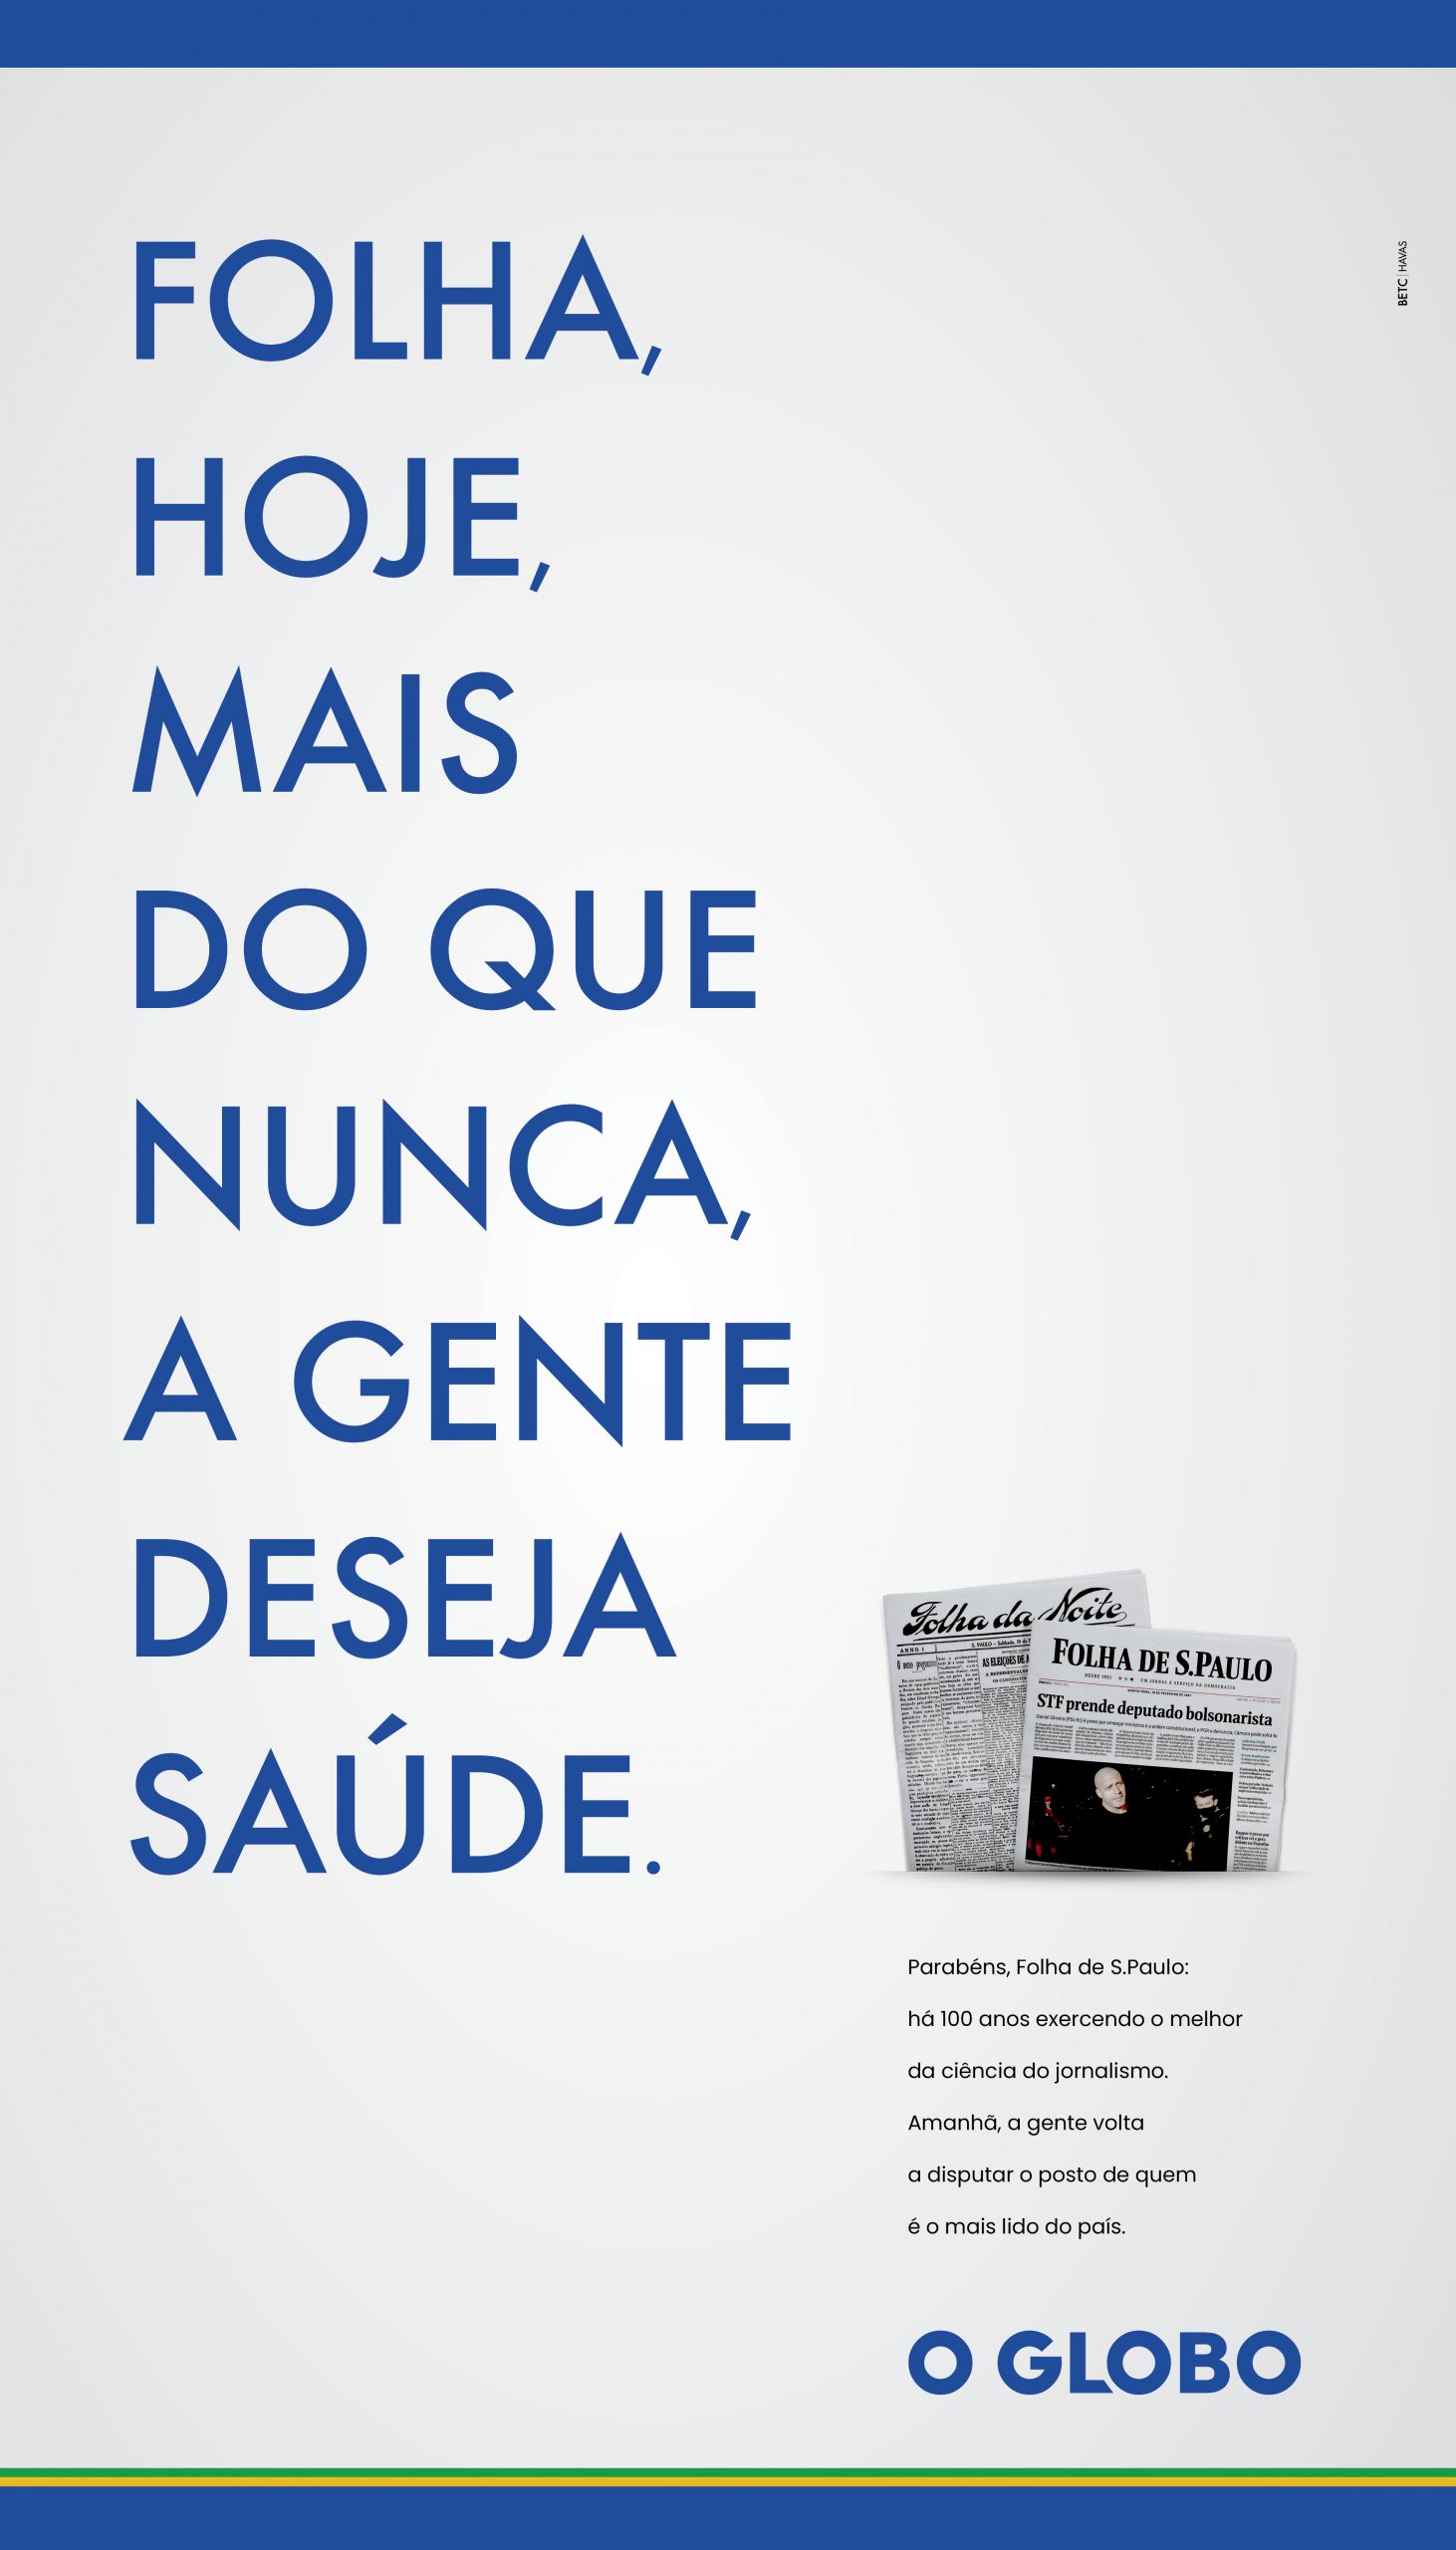 O Globo homenageia 100 anos da Folha de S.Paulo